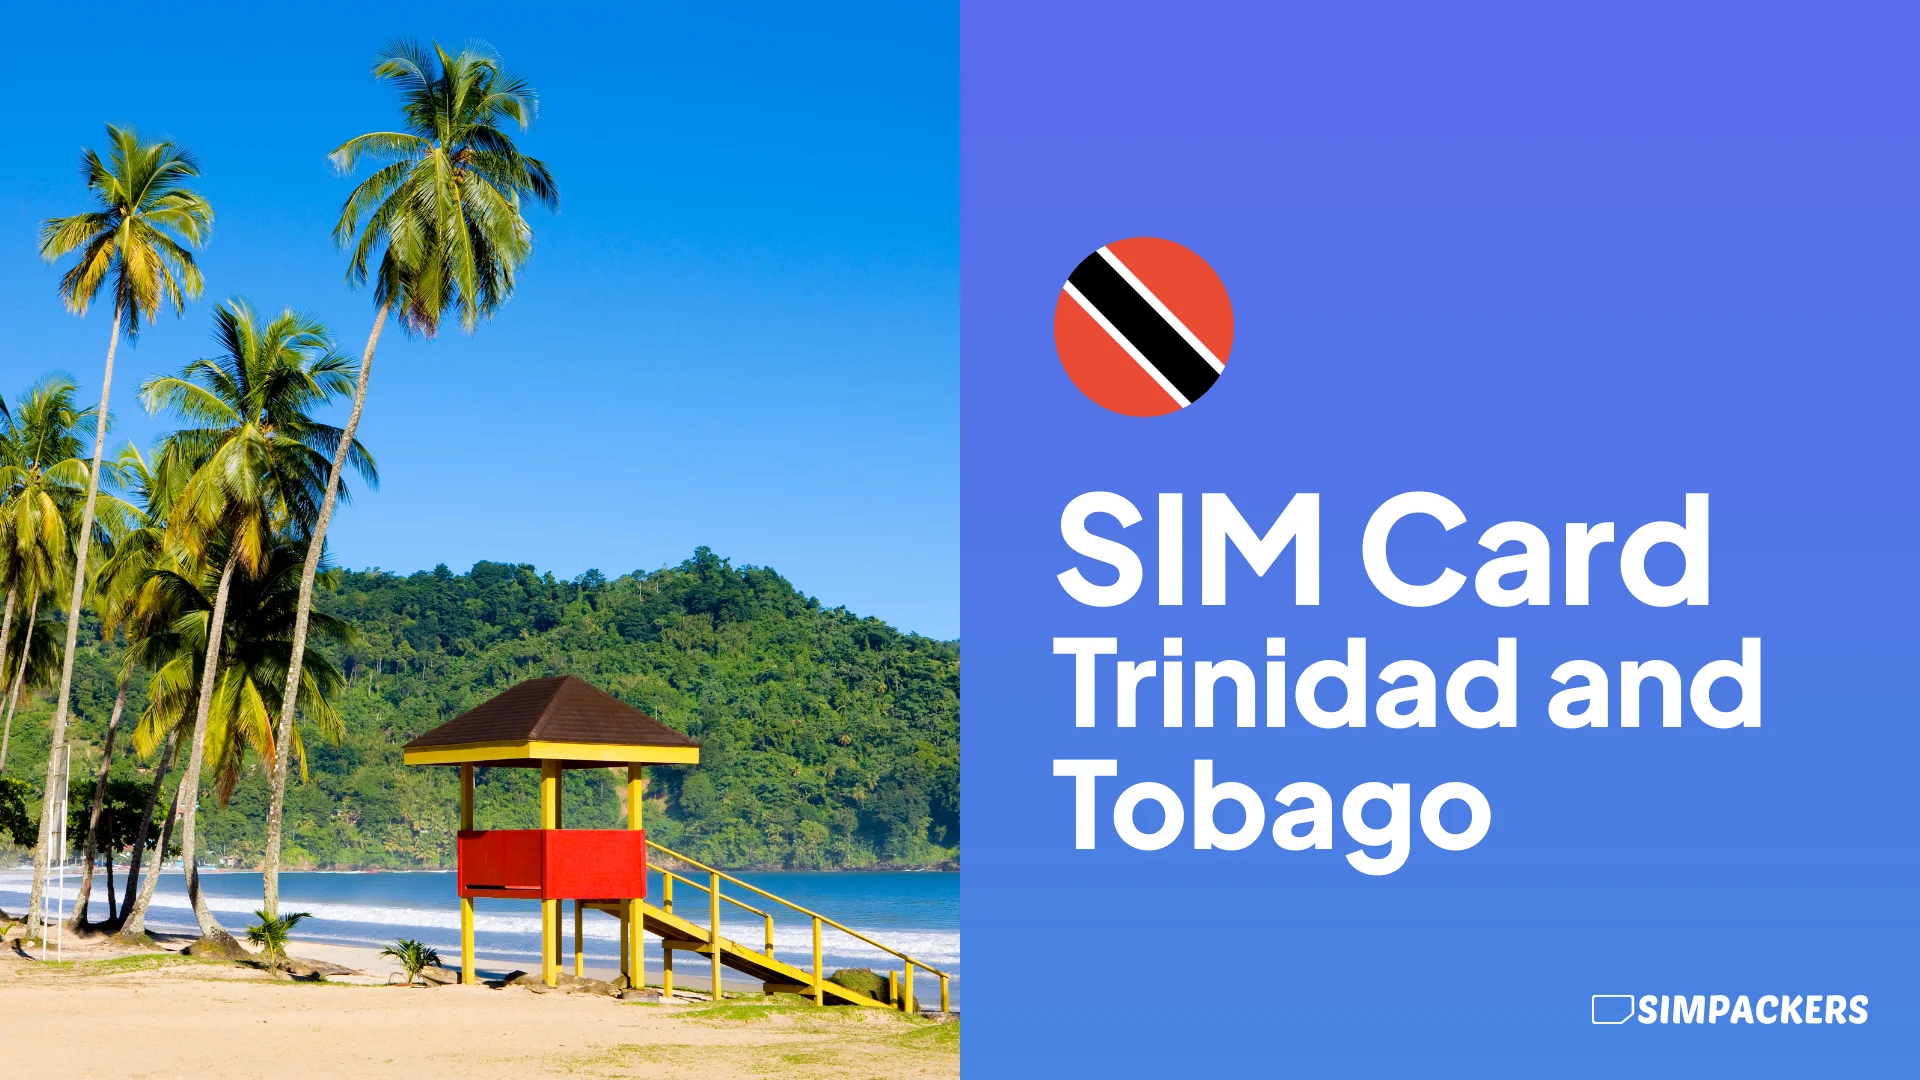 EN/FEATURED_IMAGES/sim-card-trinidad-and-tobago.webp